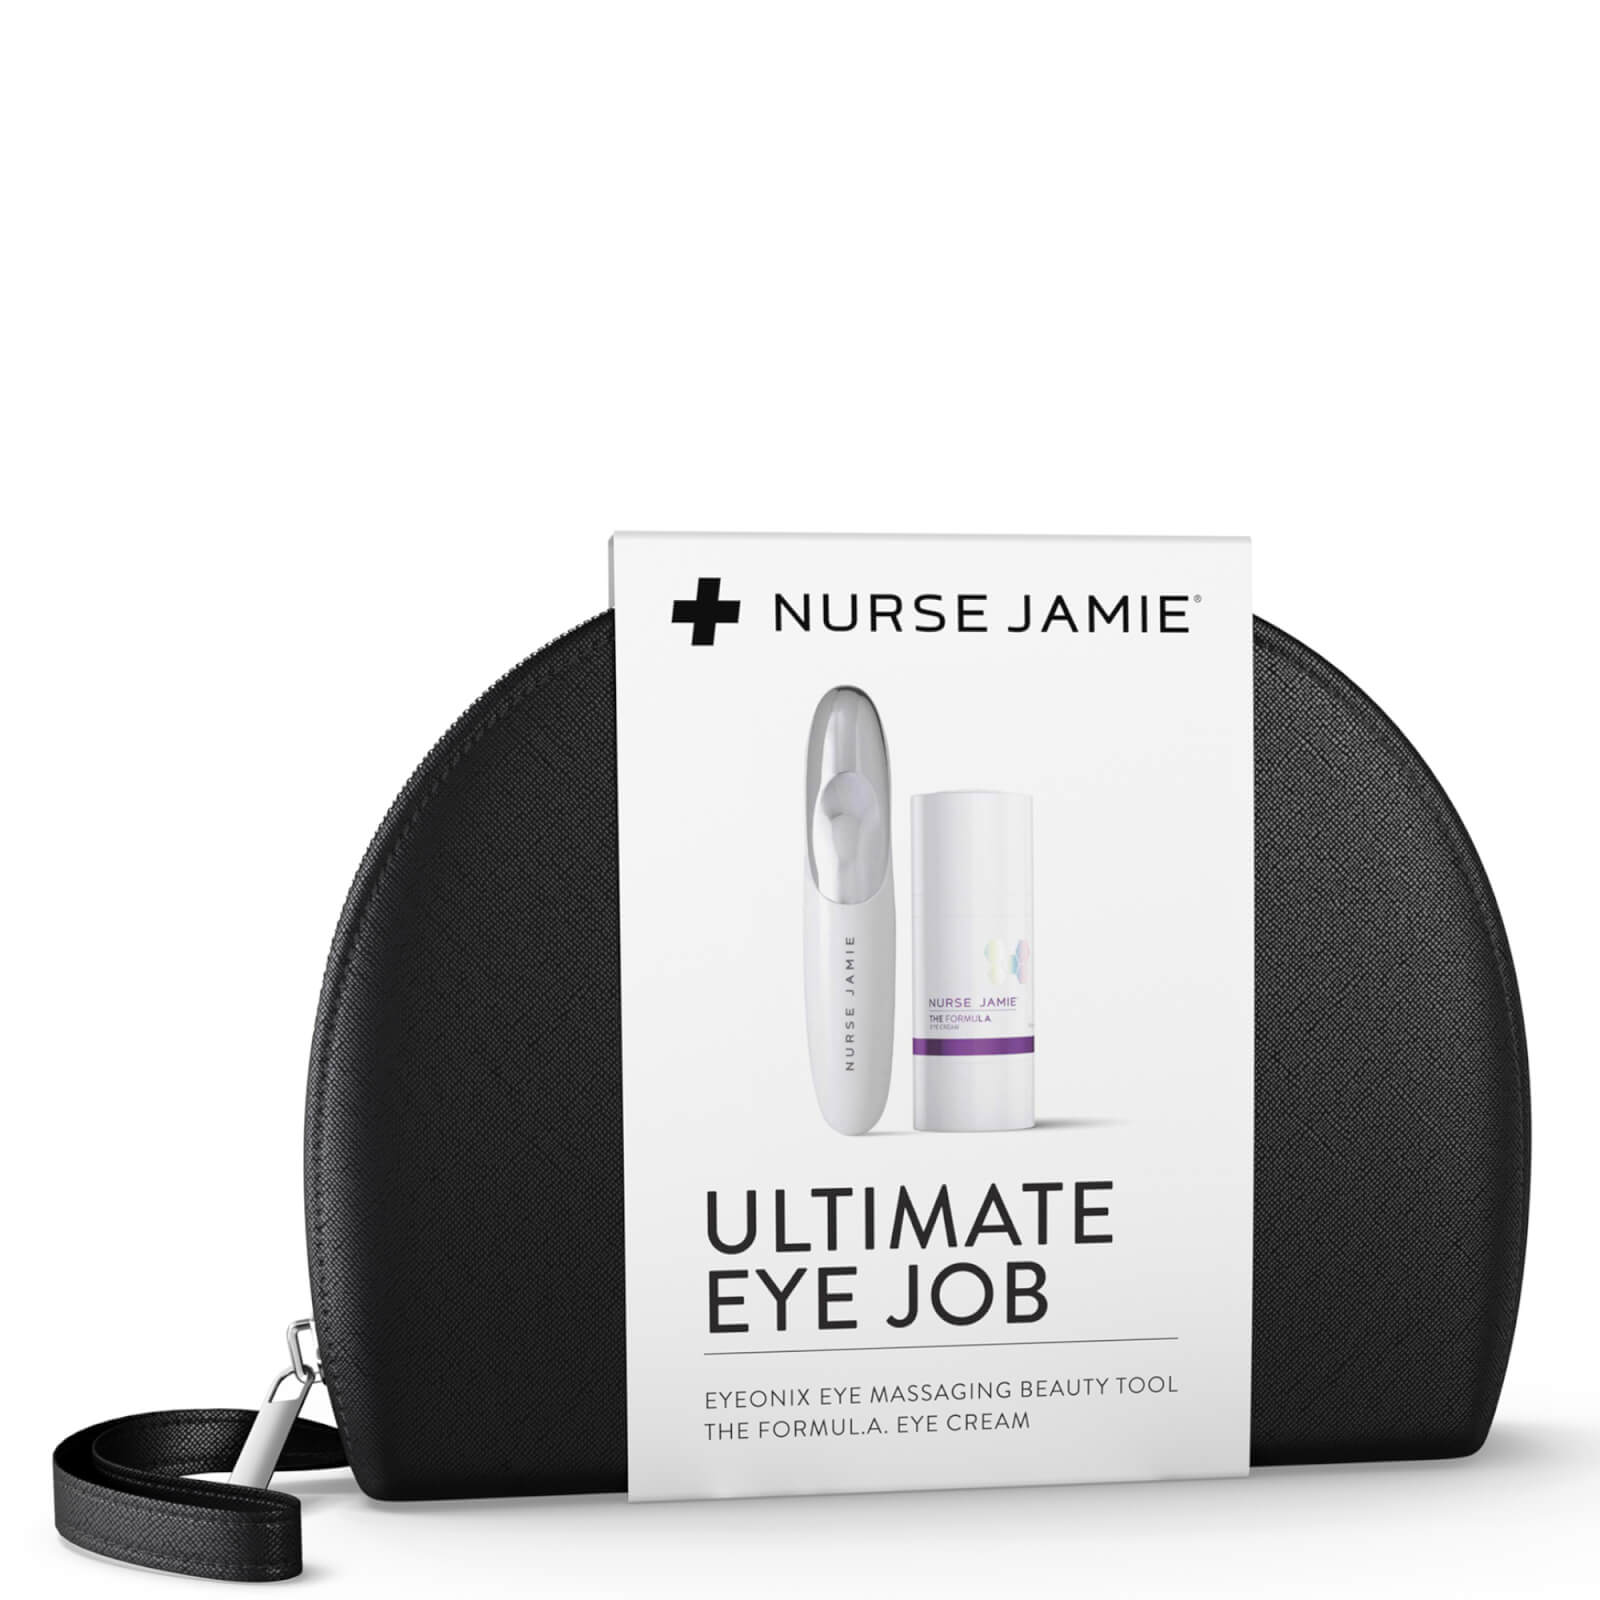 Nurse Jamie Ultimate Eye Job (worth $84.00)